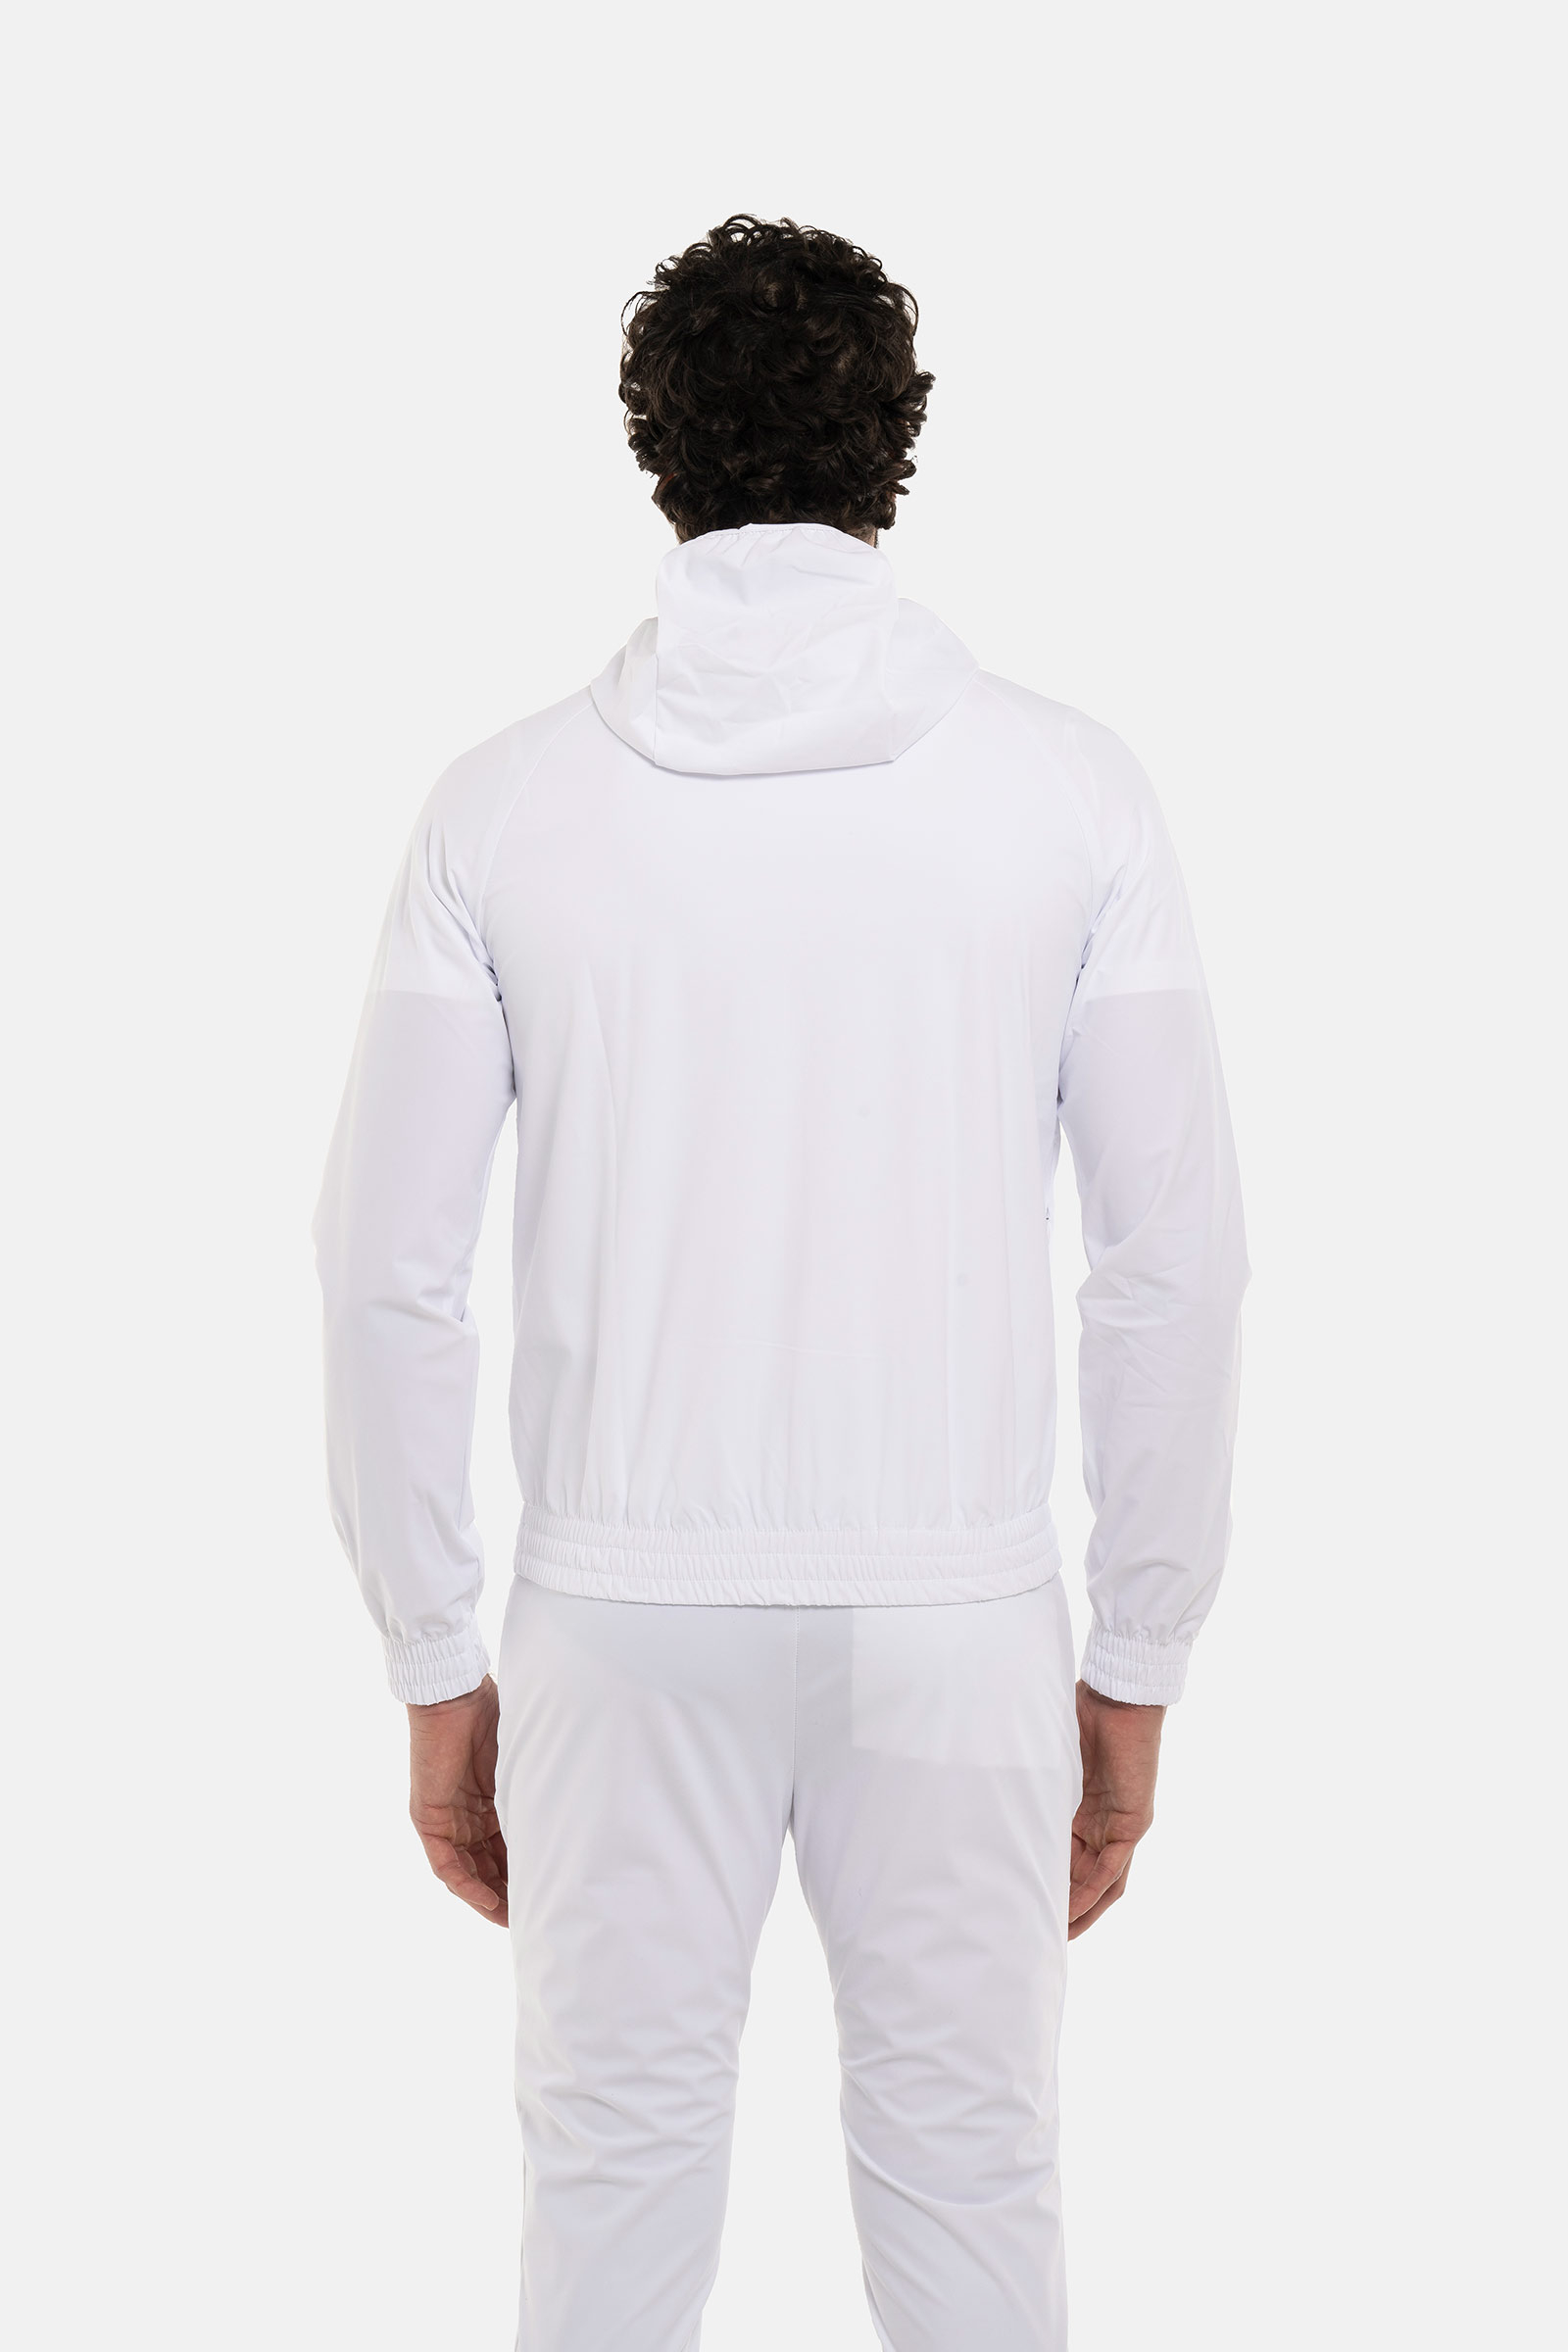 TECH FZ SWEATSHIRT SKULL - WHITE - Hydrogen - Luxury Sportwear